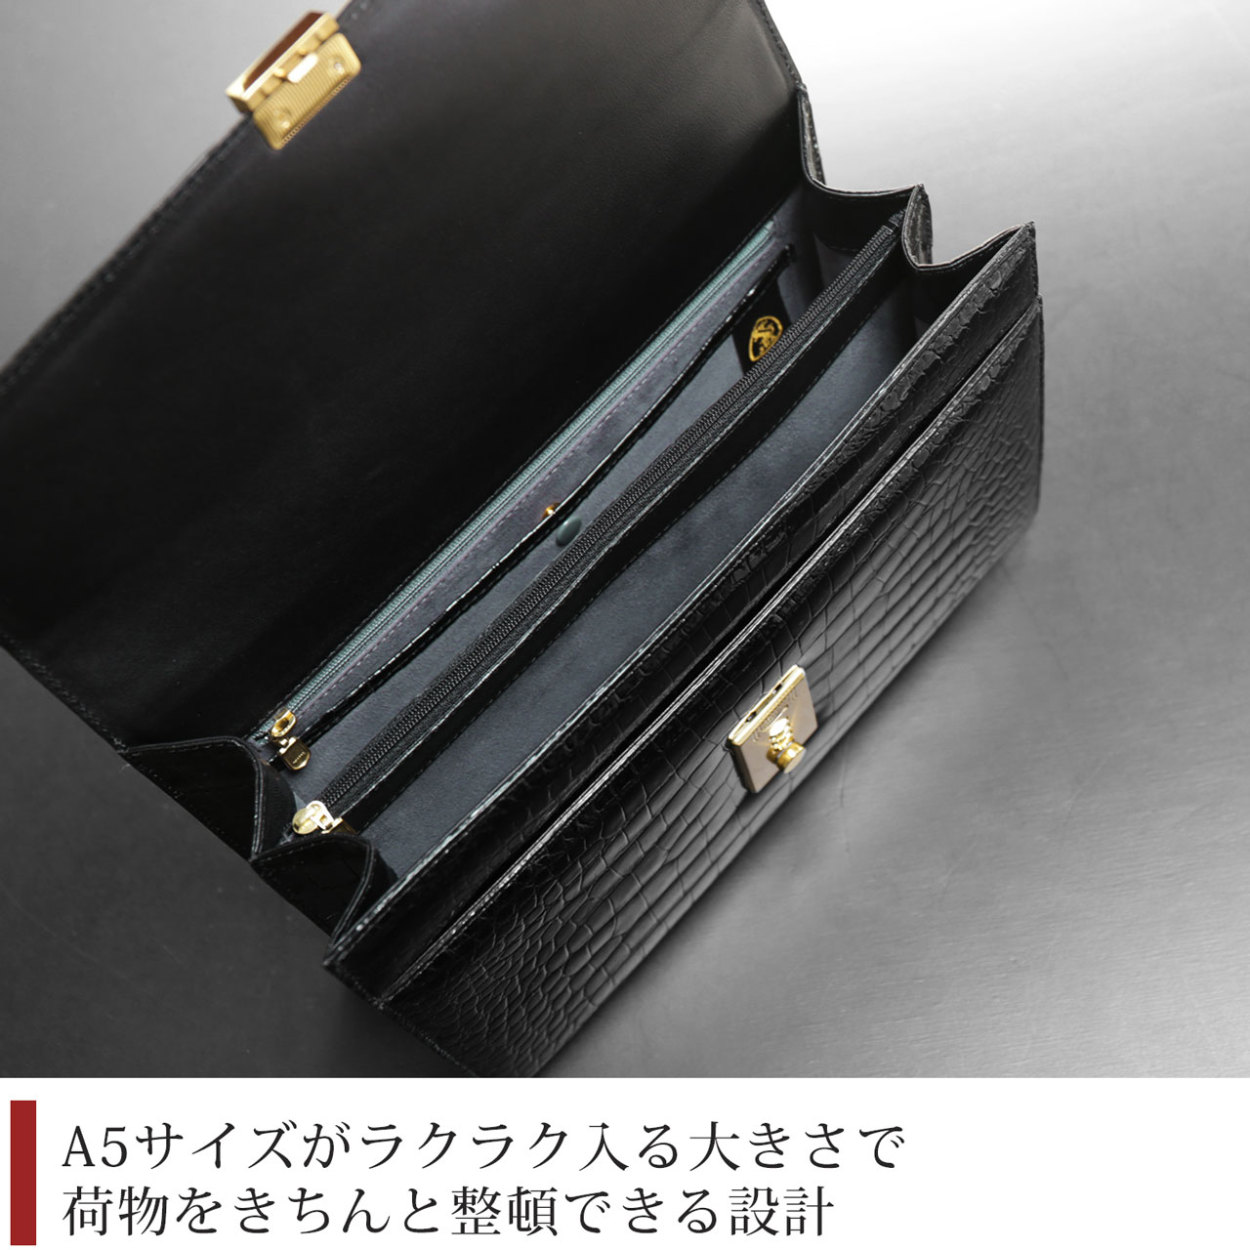 クロコダイル メンズ ビジネスバッグ かぶせ ダイヤルロック 30cm ブリーフケース 日本製 ハード 持ち手 革 4FA 保証書 付き プレゼント  ギフト(3877-1r)